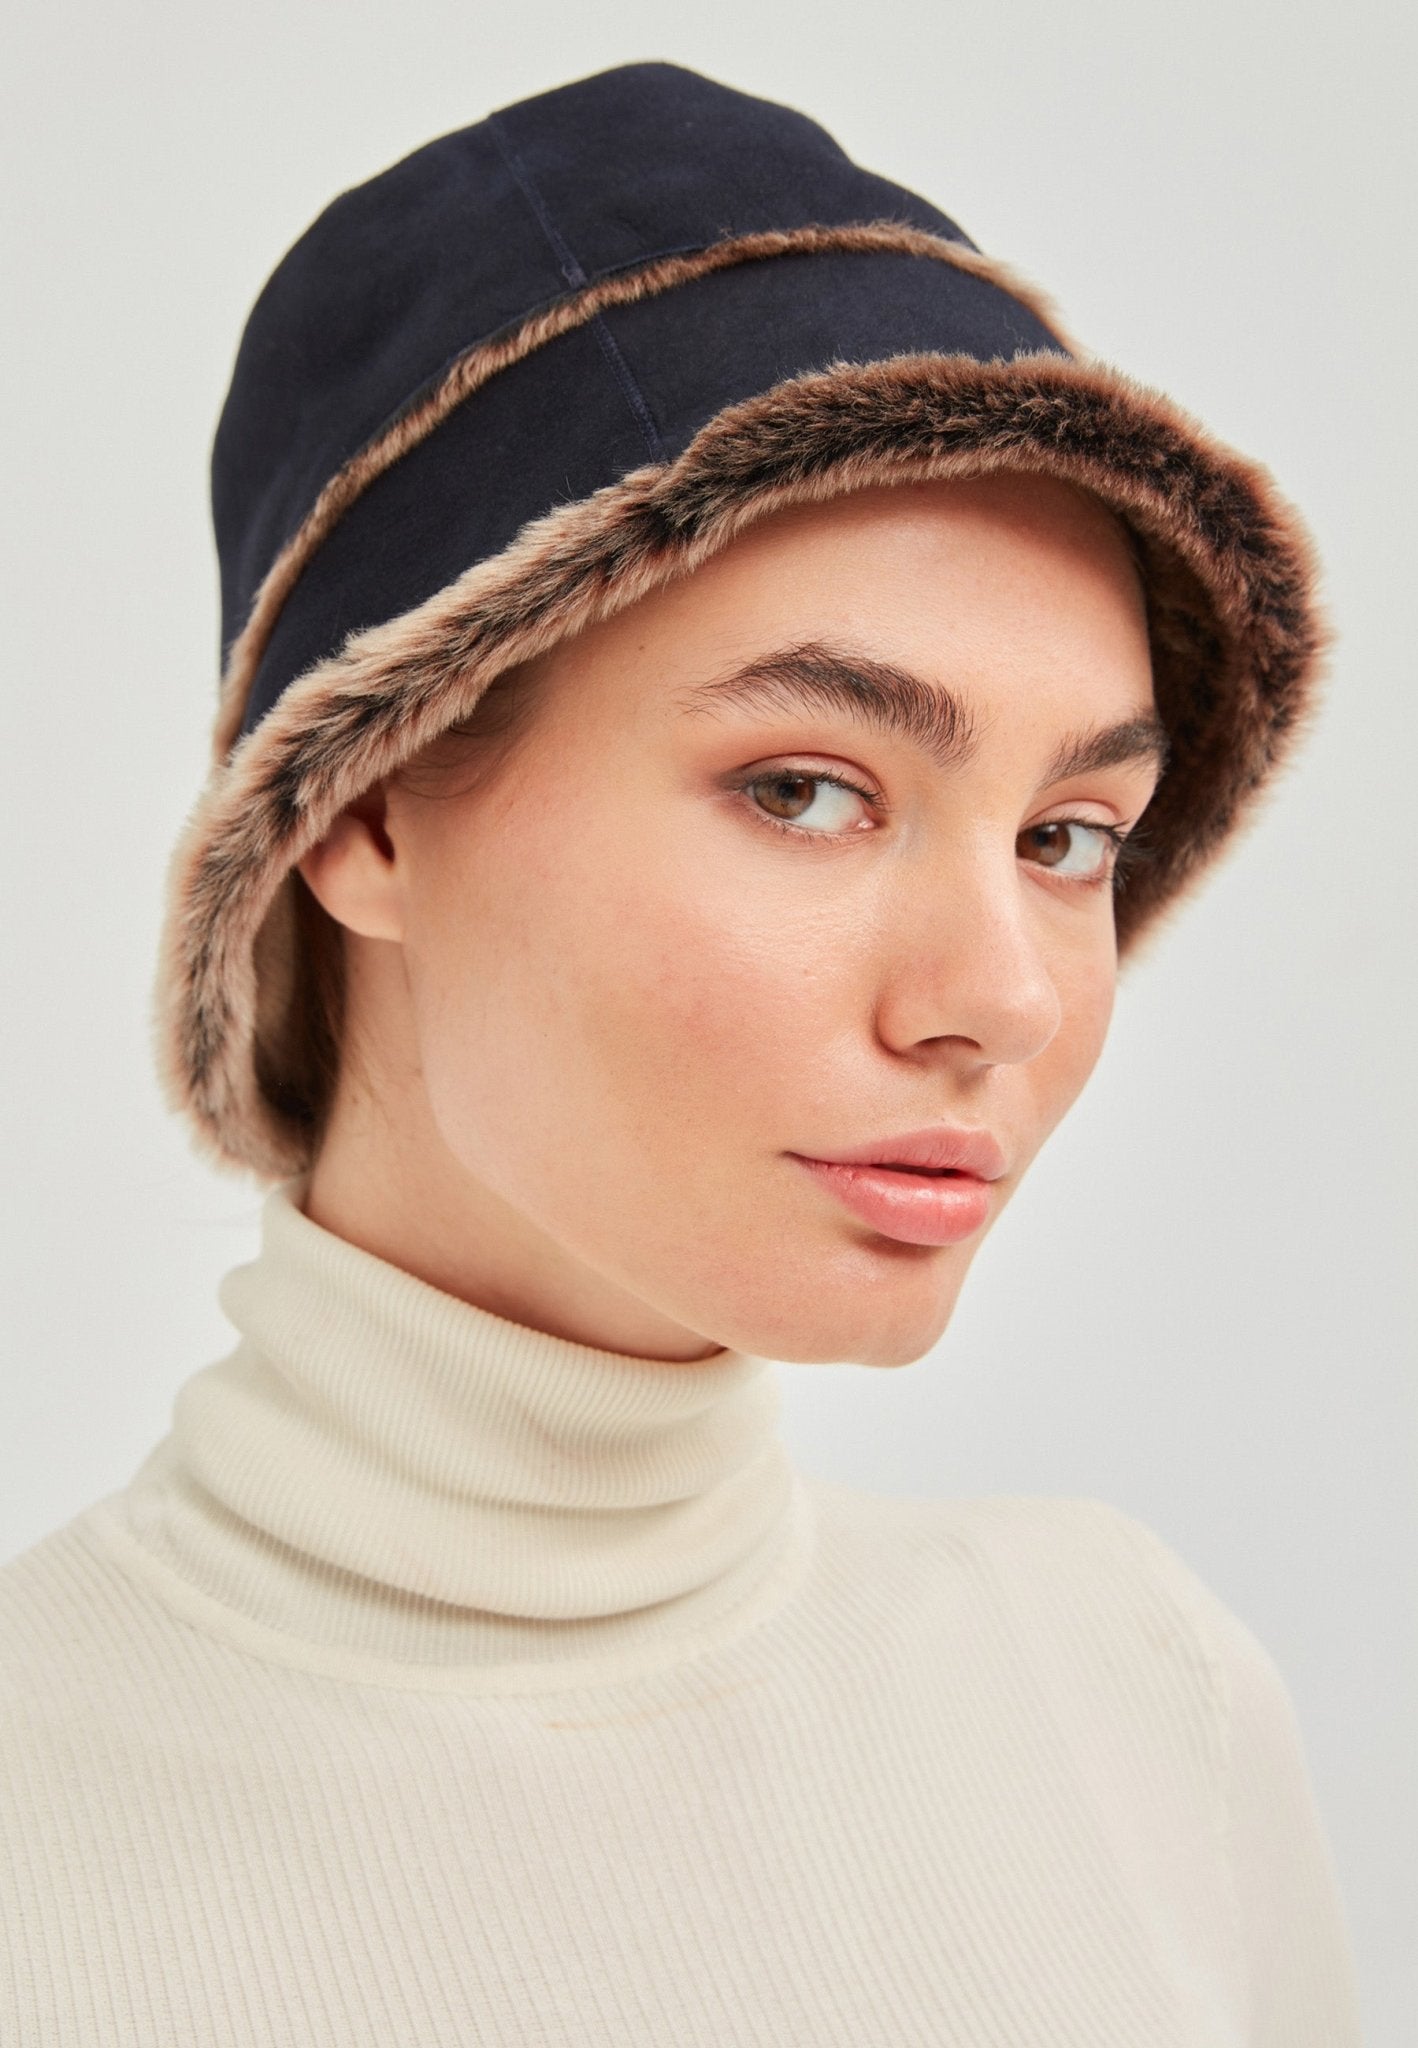 Bucket Hats for Women - Buy Online